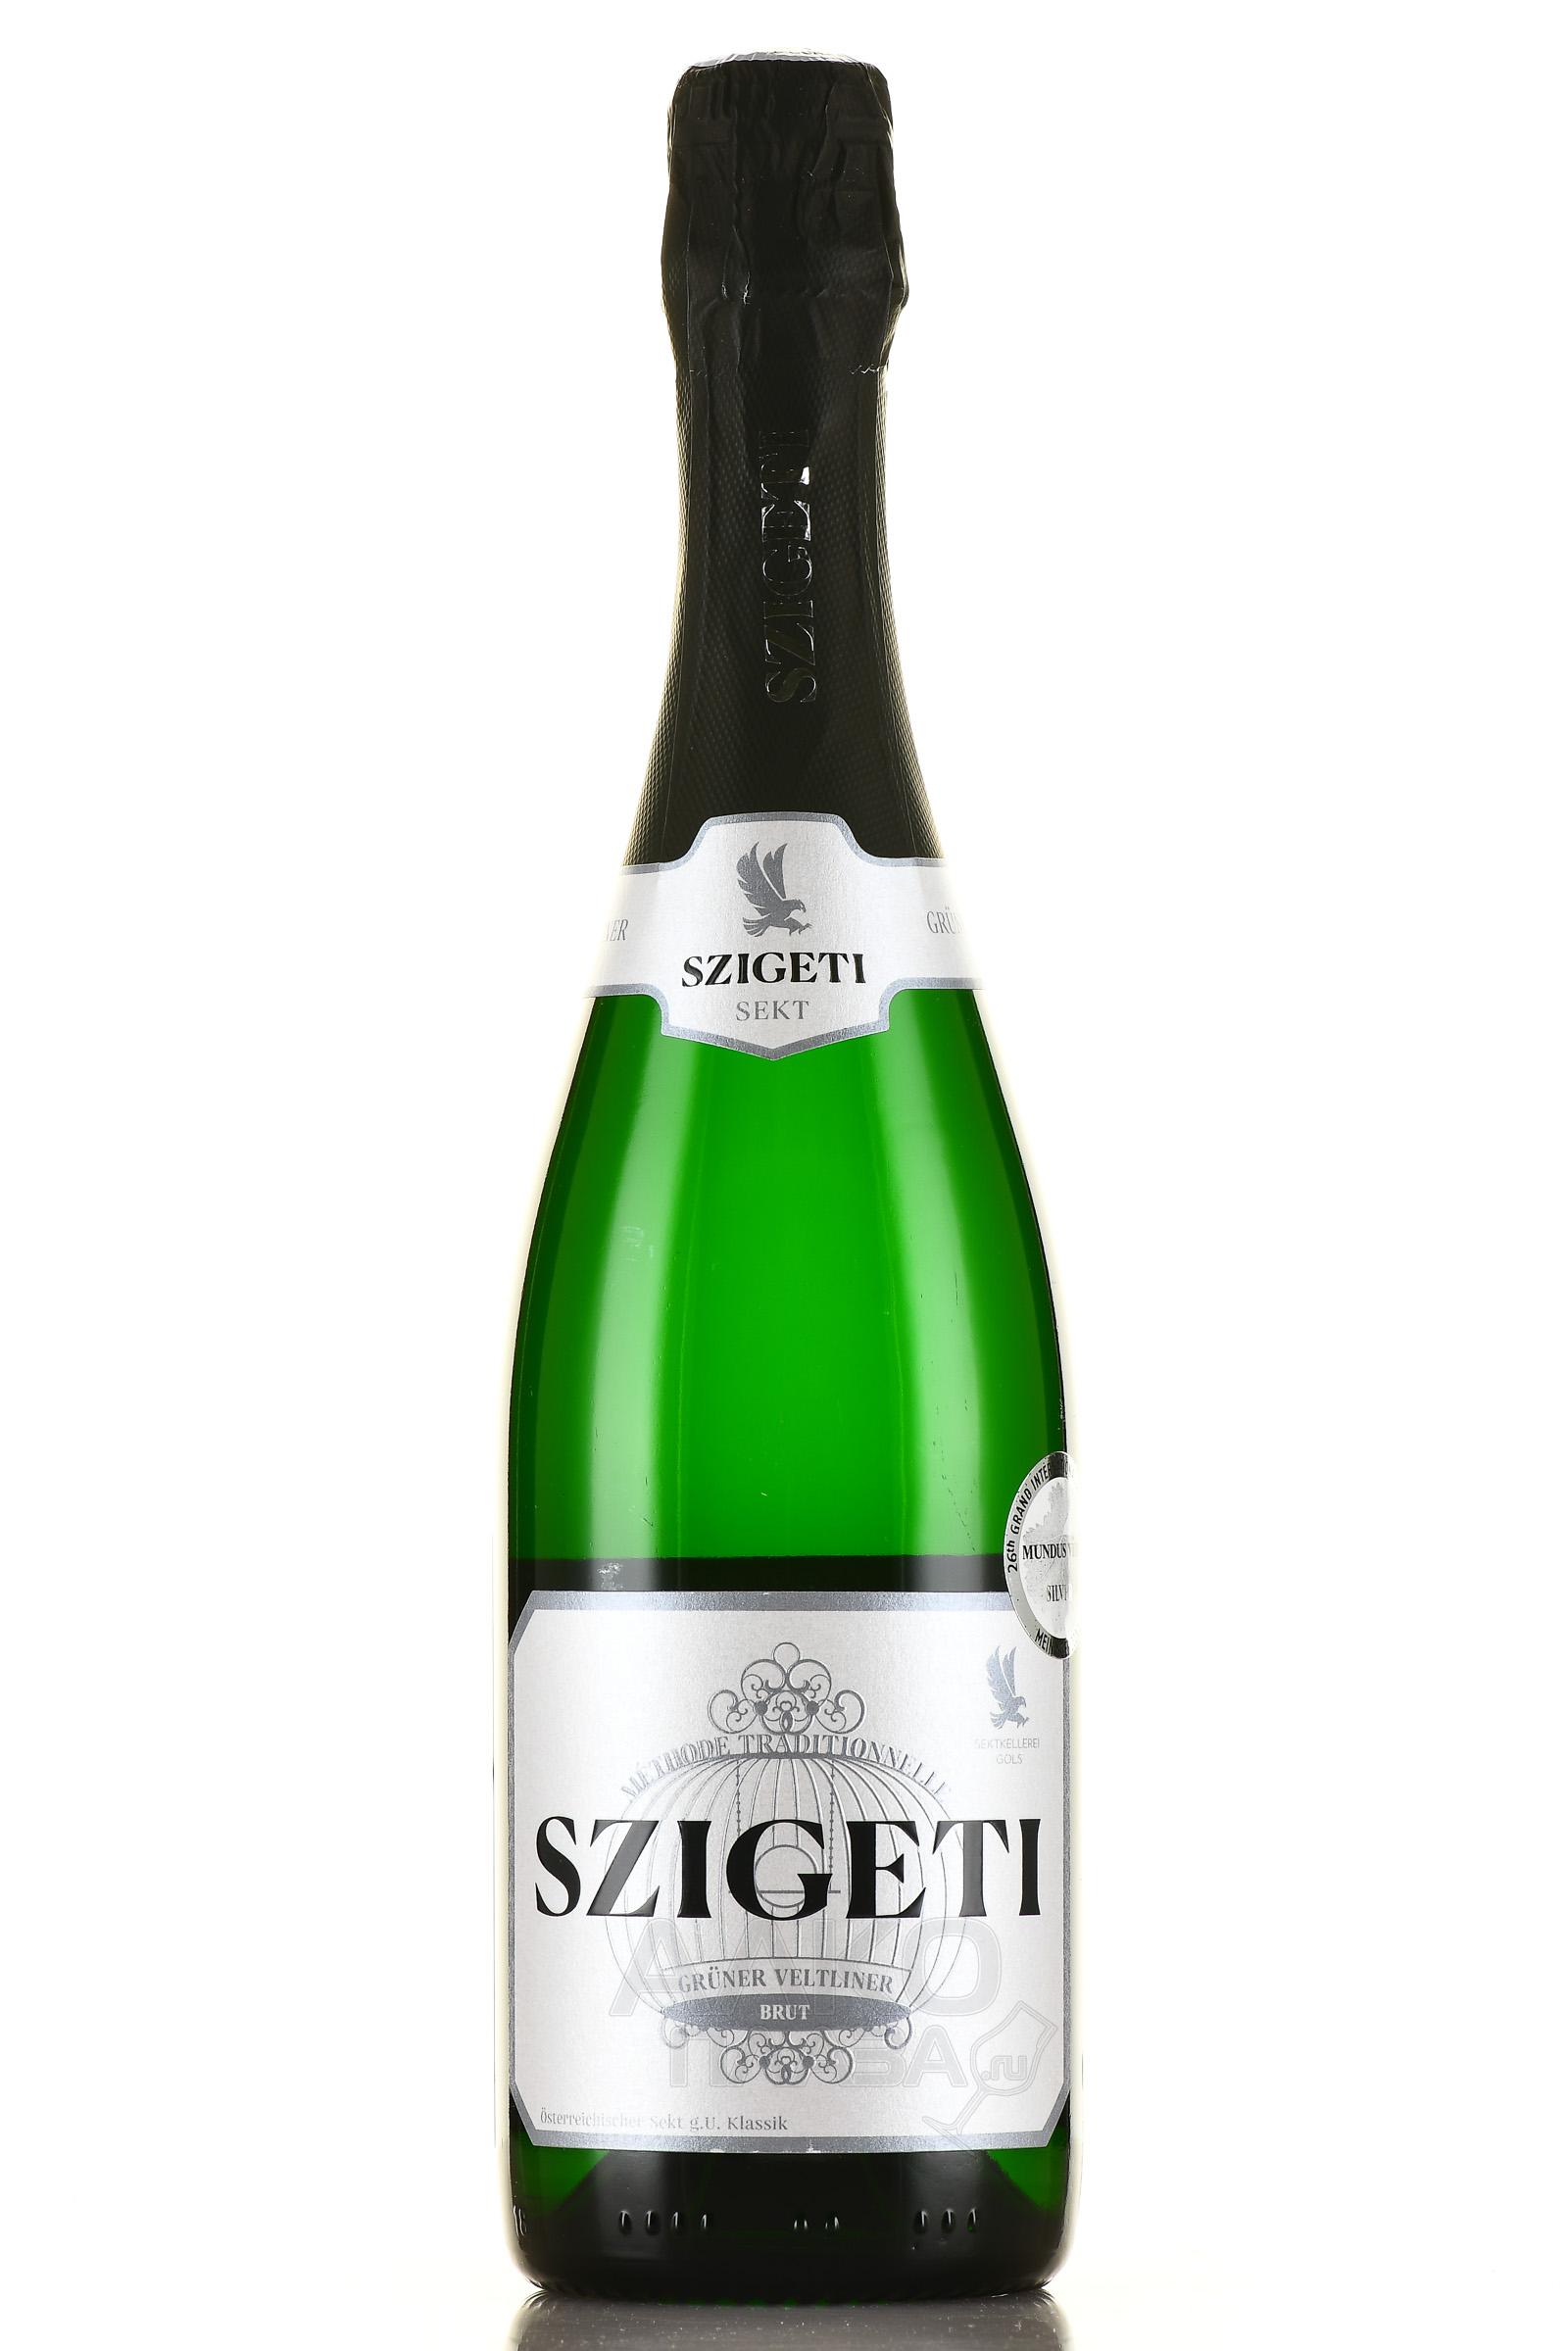 Szigeti Gruner Veltliner Sekt Brut Klassik - игристое вино Сигети Грюнер Вельтлинер Зект Брют Классик 0.75 л